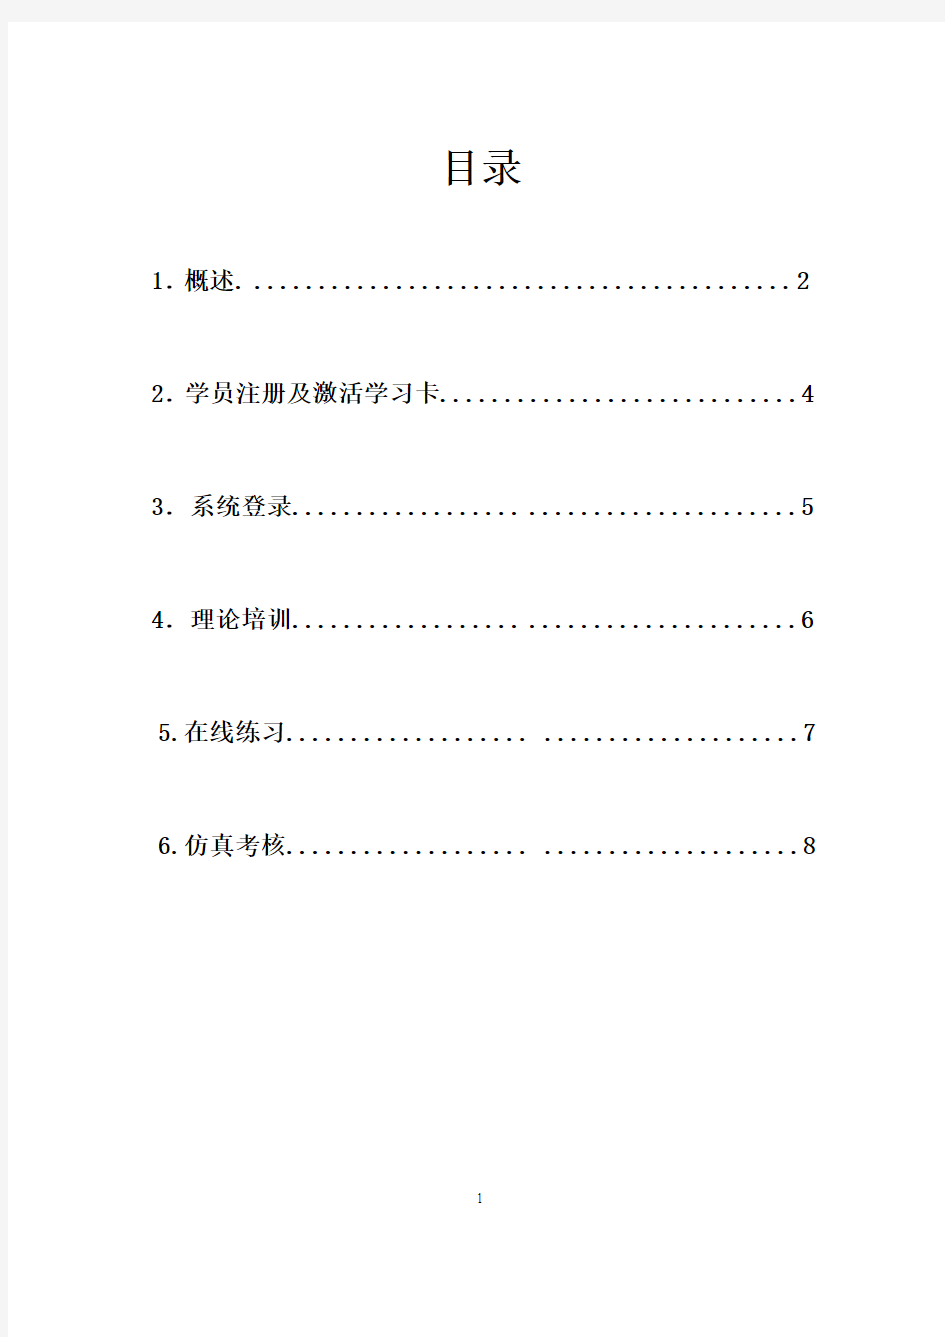 石家庄市驾驶培训远程网络教学系统操作手册(学员版)